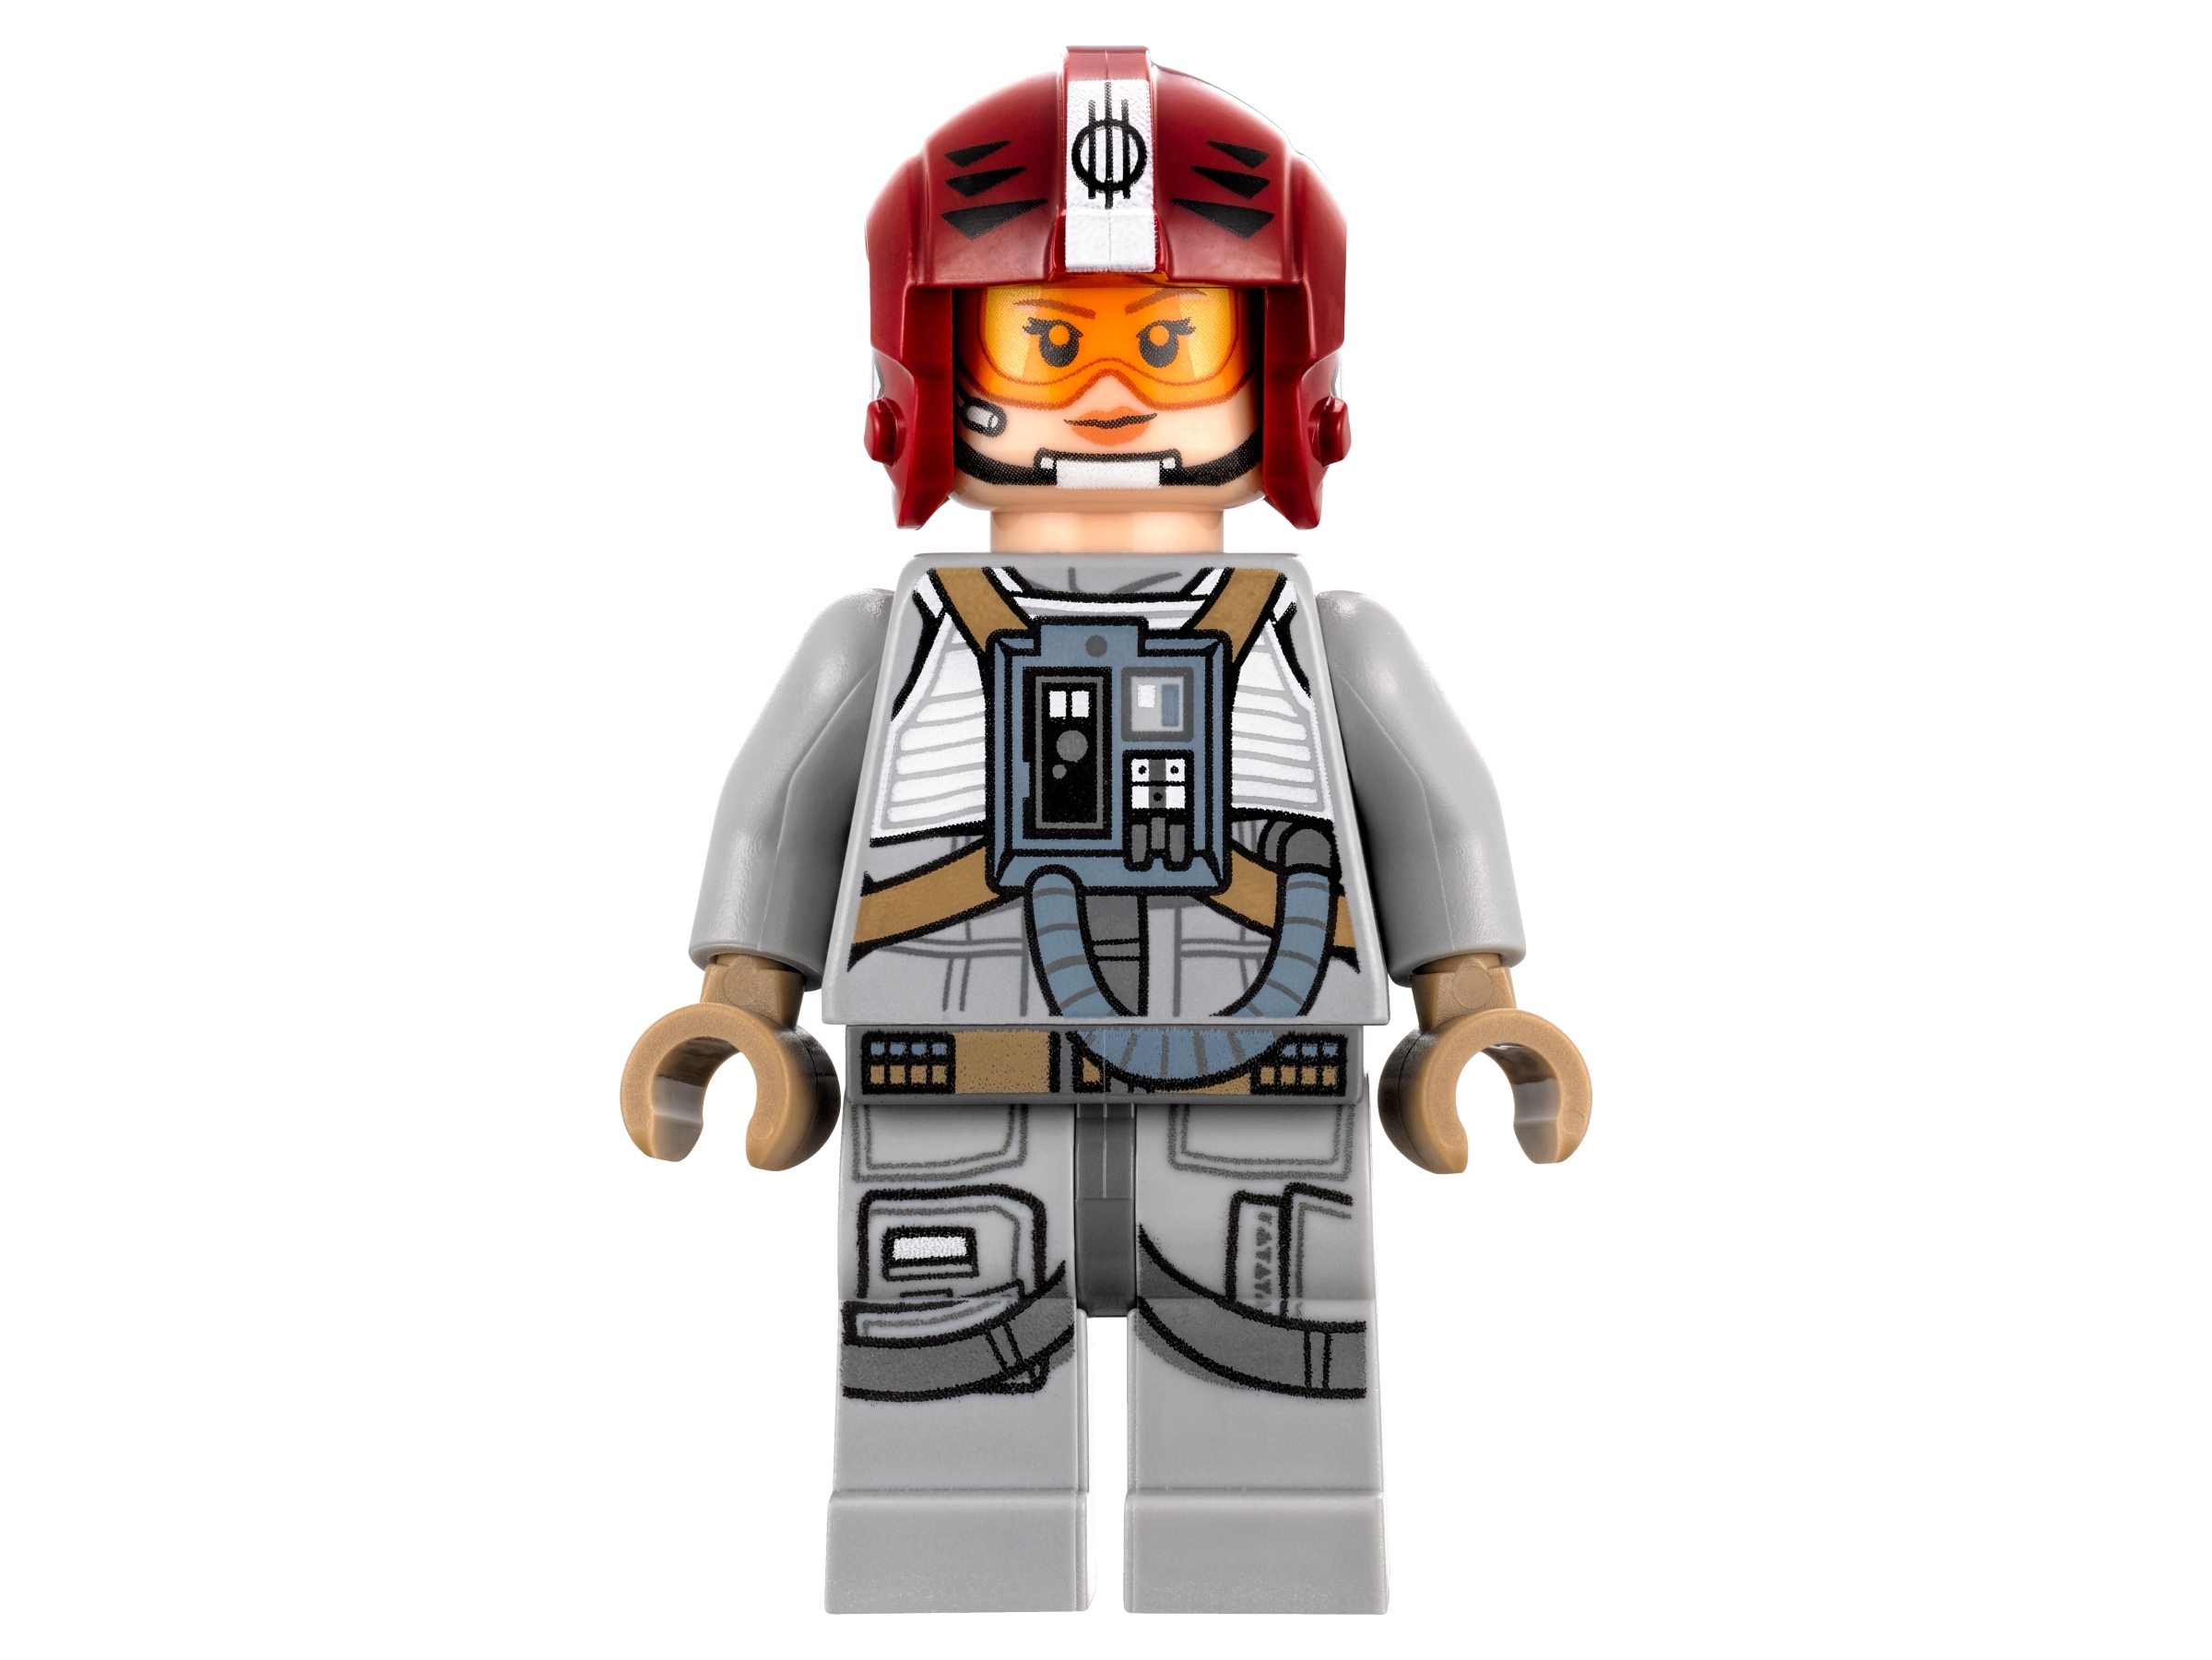 Compre LEGO Star Wars Sandspeeder 75204 Inaugurado